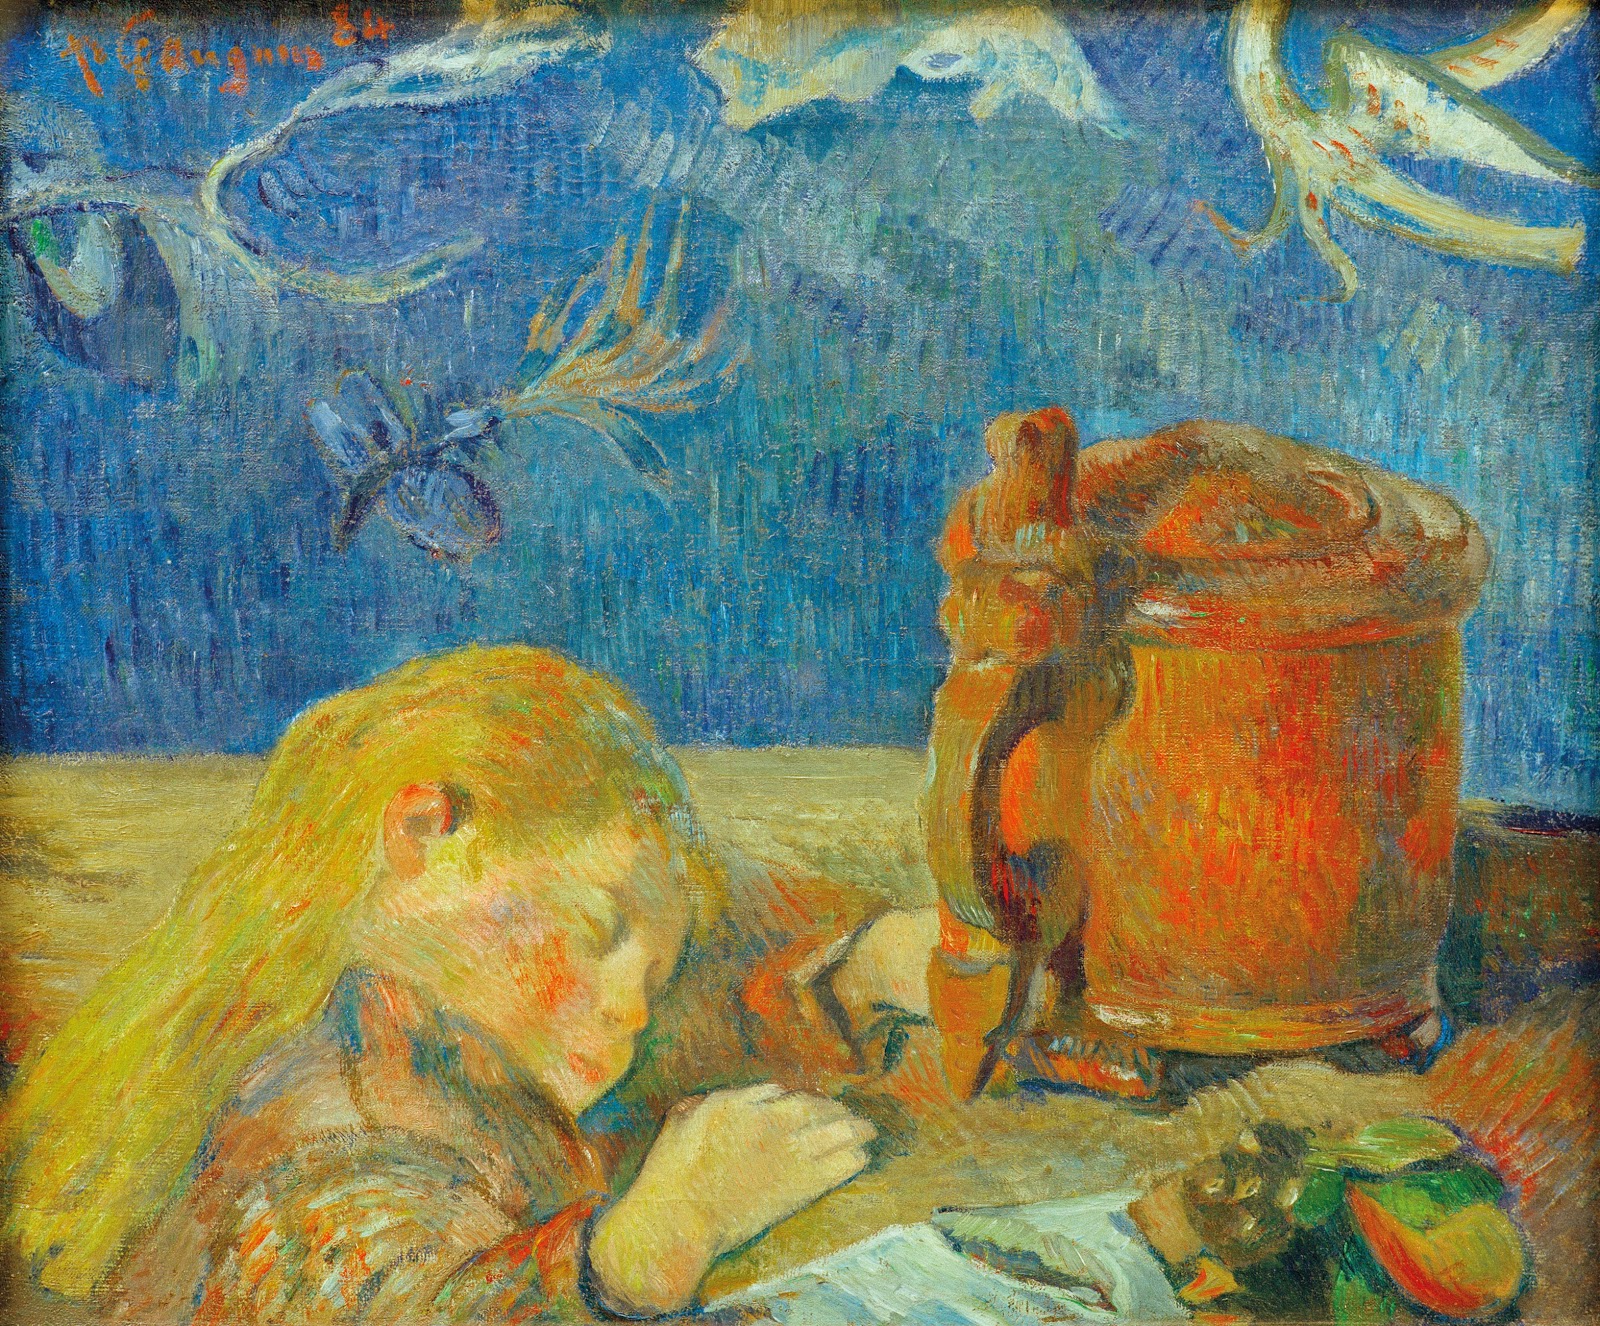 Paul+Gauguin-1848-1903 (469).jpg